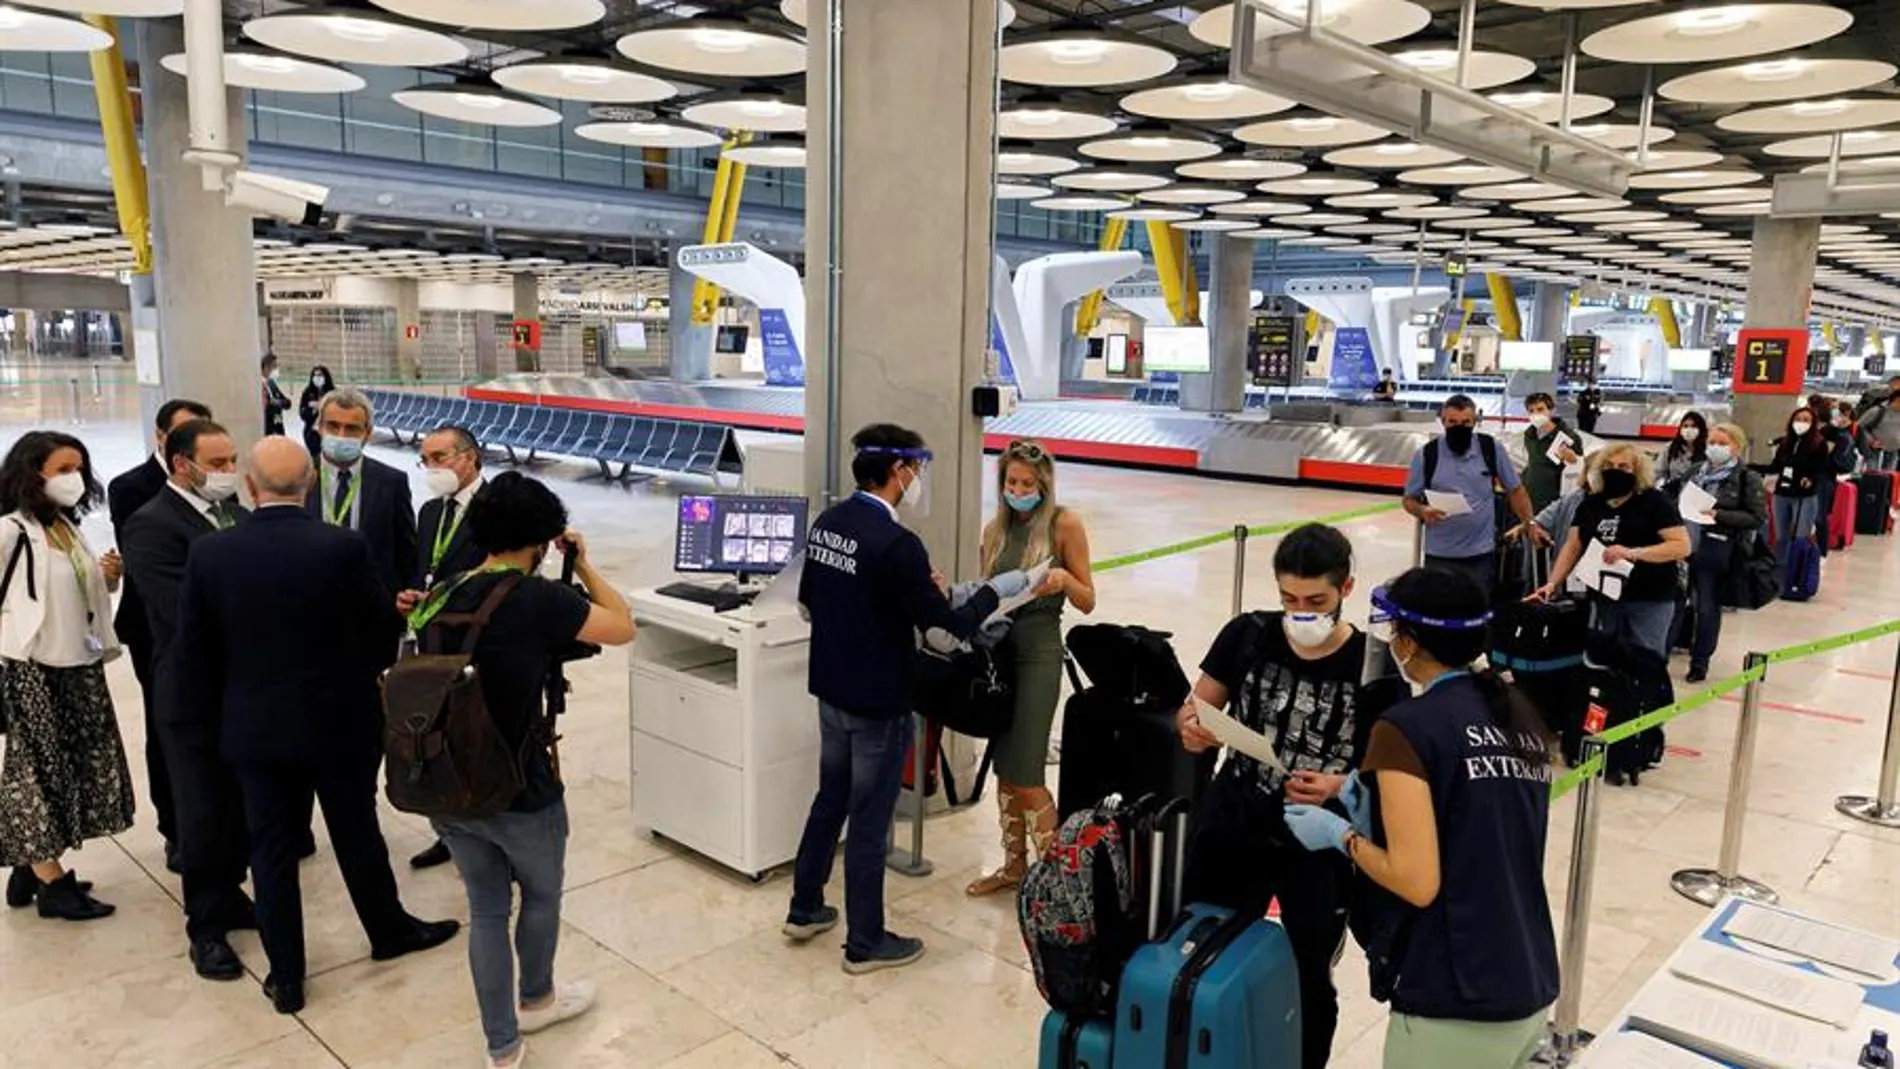 Medidas de seguridad implantadas en el aeropuerto Adolfo Suárez Madrid-Barajas